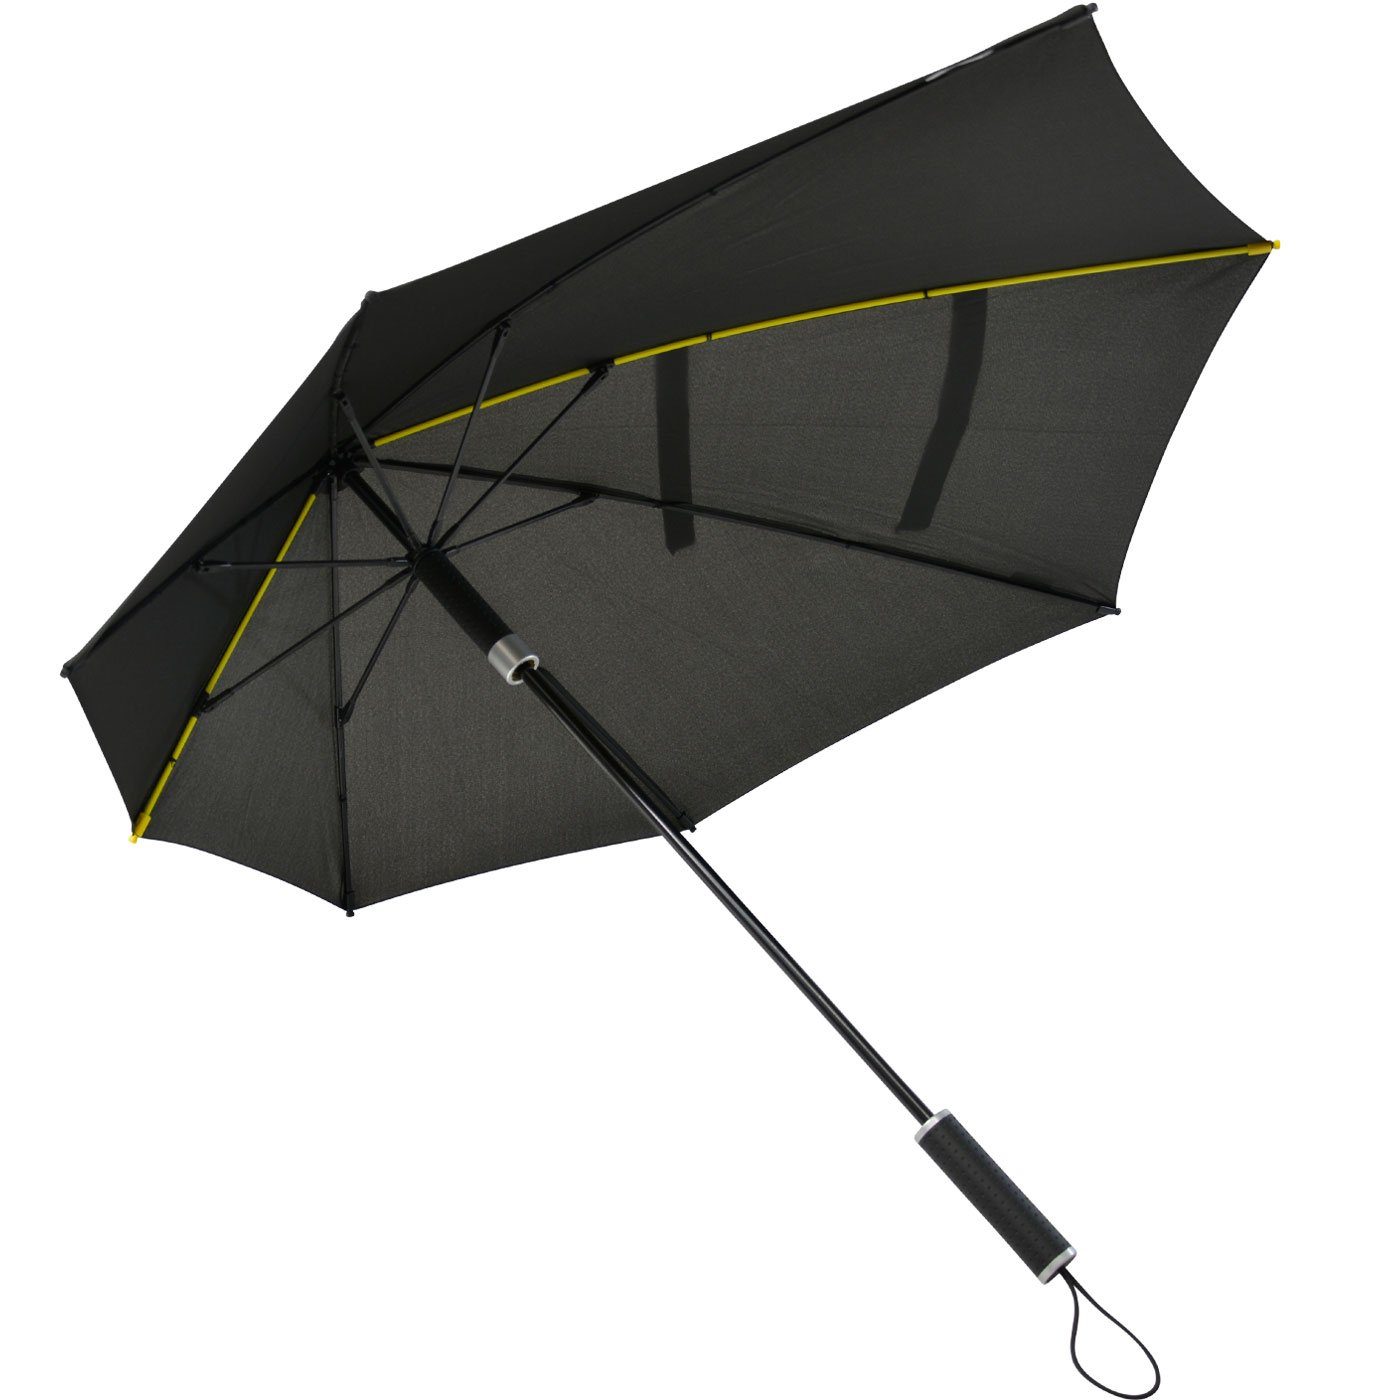 bis aerodynamischer zu in Regenschirm, Stockregenschirm km/h den hält Form besondere der STORMaxi aus Schirm schwarz durch Impliva Wind, Sturmschirm sich seine 100 dreht